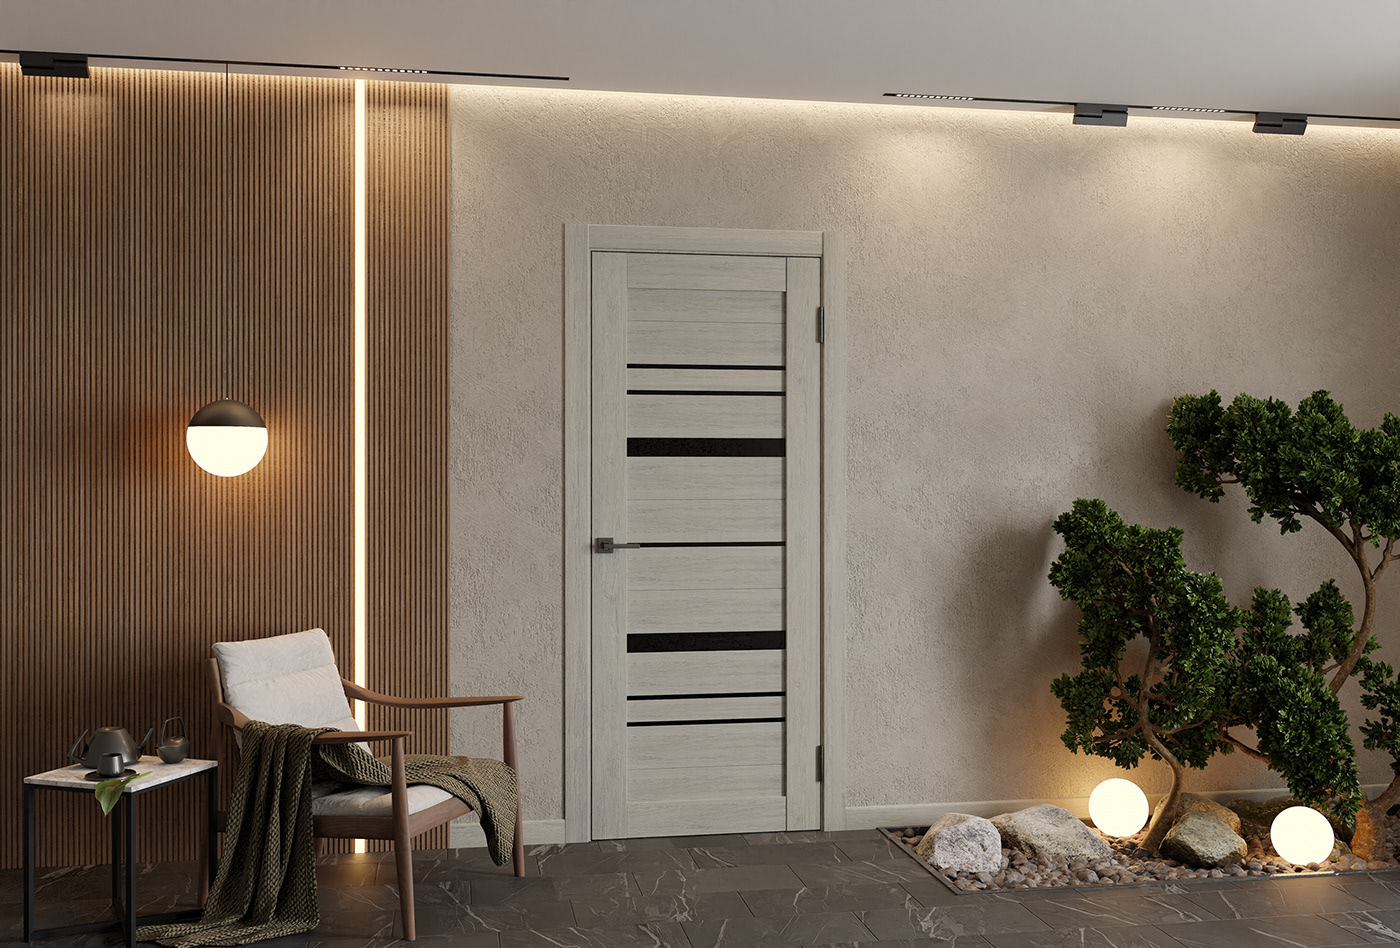 indoor 3d modeling Vizualization japanese style Style room design modern light Render visualization